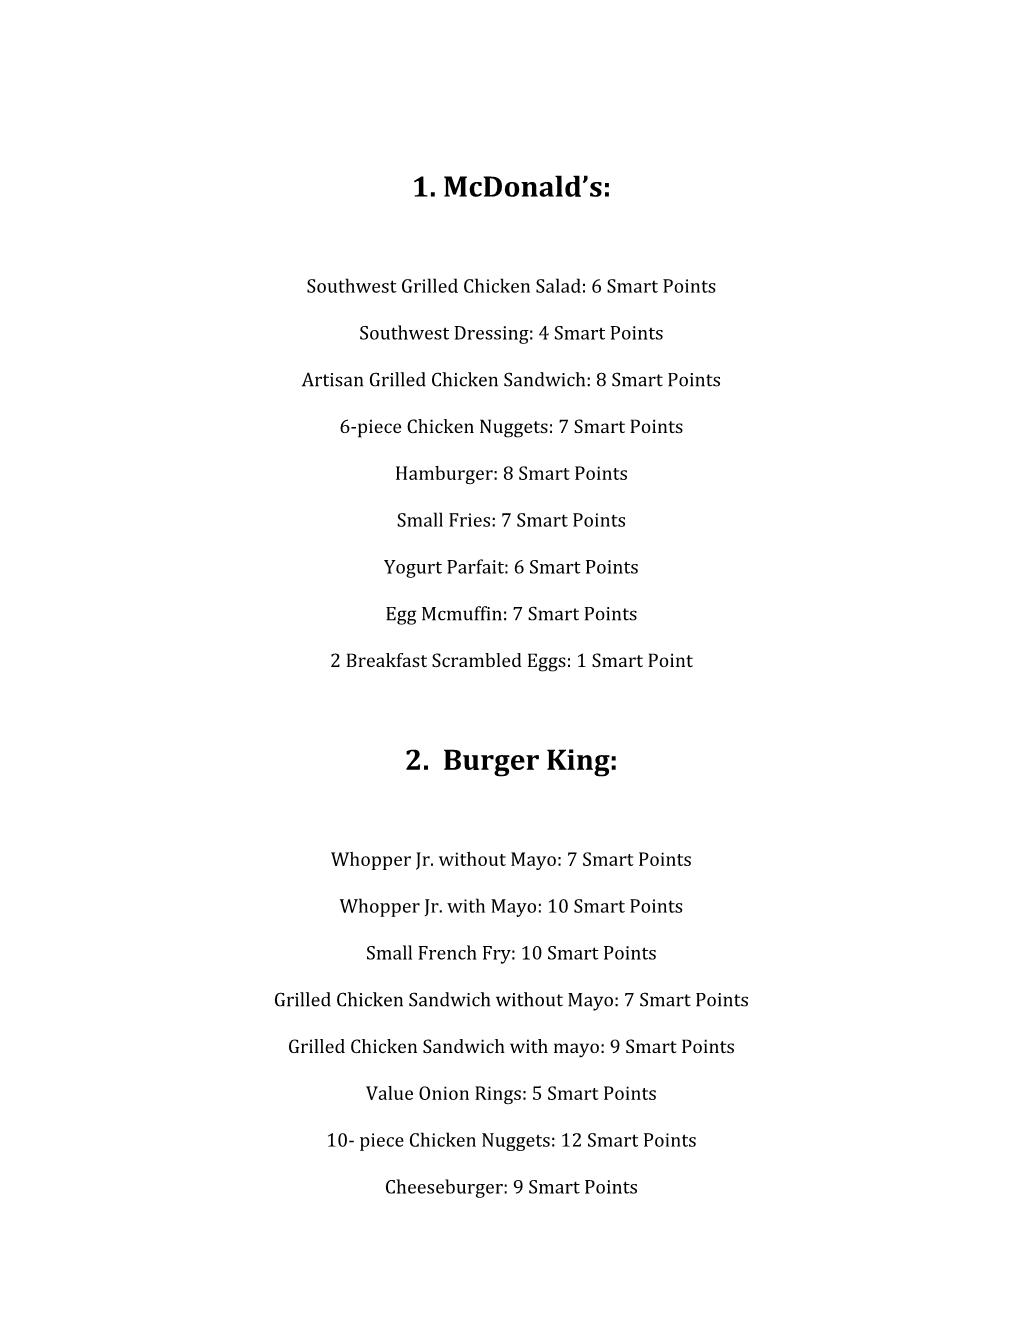 2. Burger King